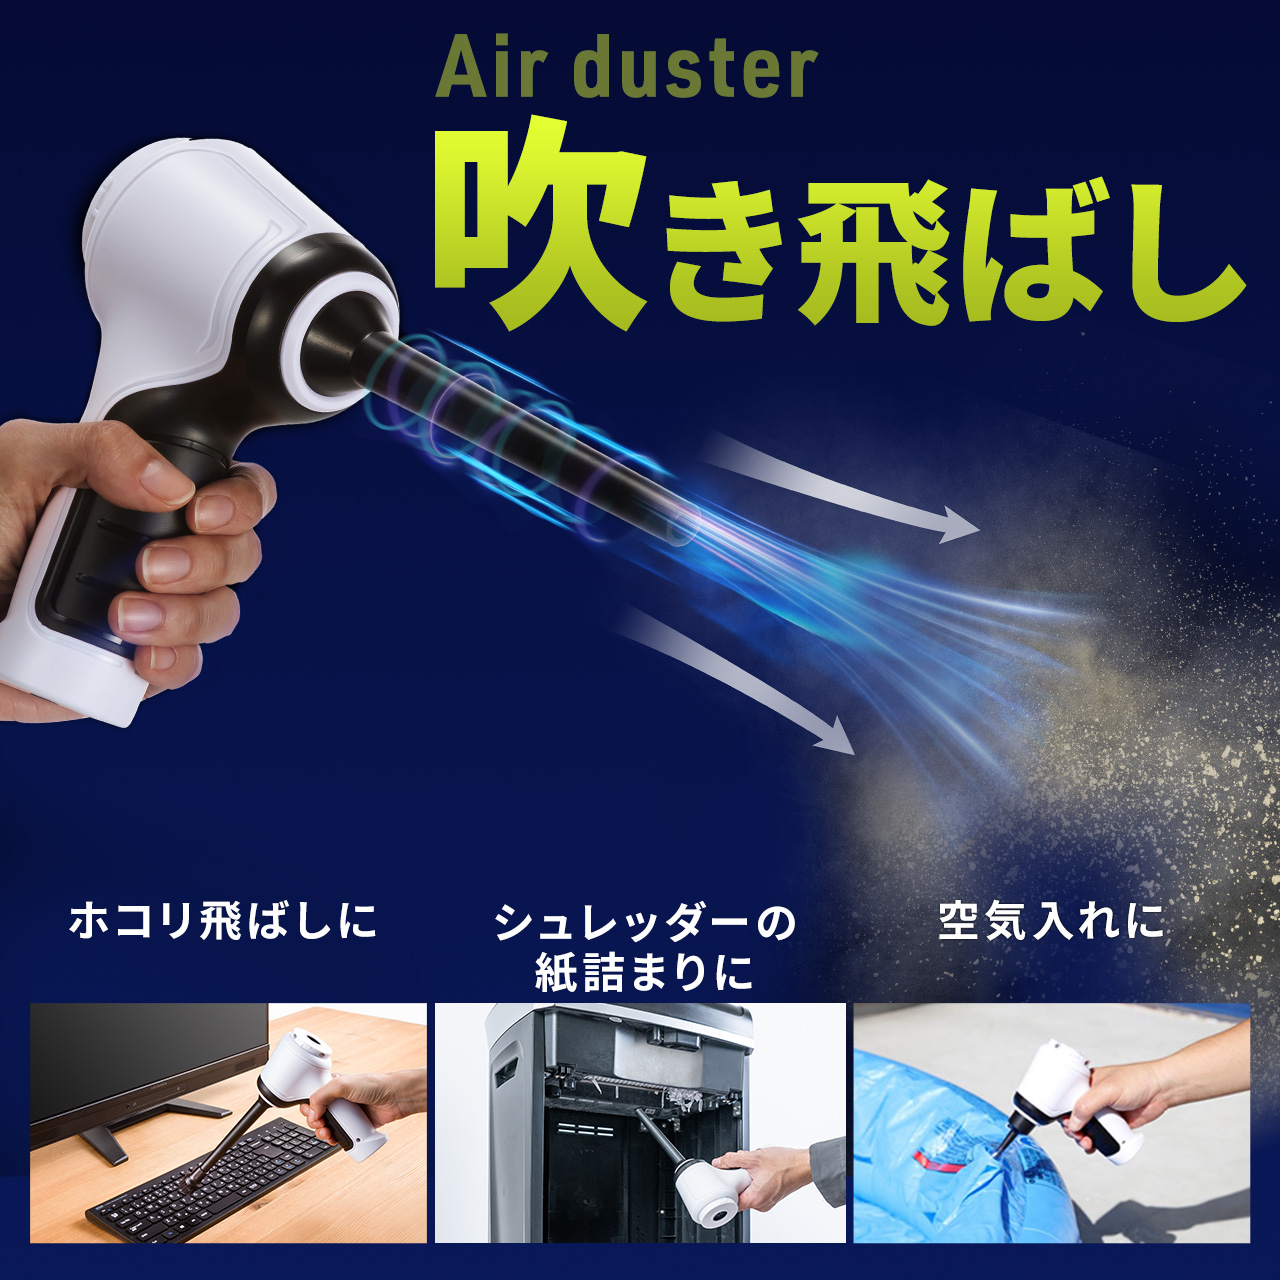 【ビジネス応援セール】電動エアダスター 強力エアダスター バキュームクリーナー 充電式 吹き飛ばし 吸い込み クリーナー ハンディクリーナー 200-CD082